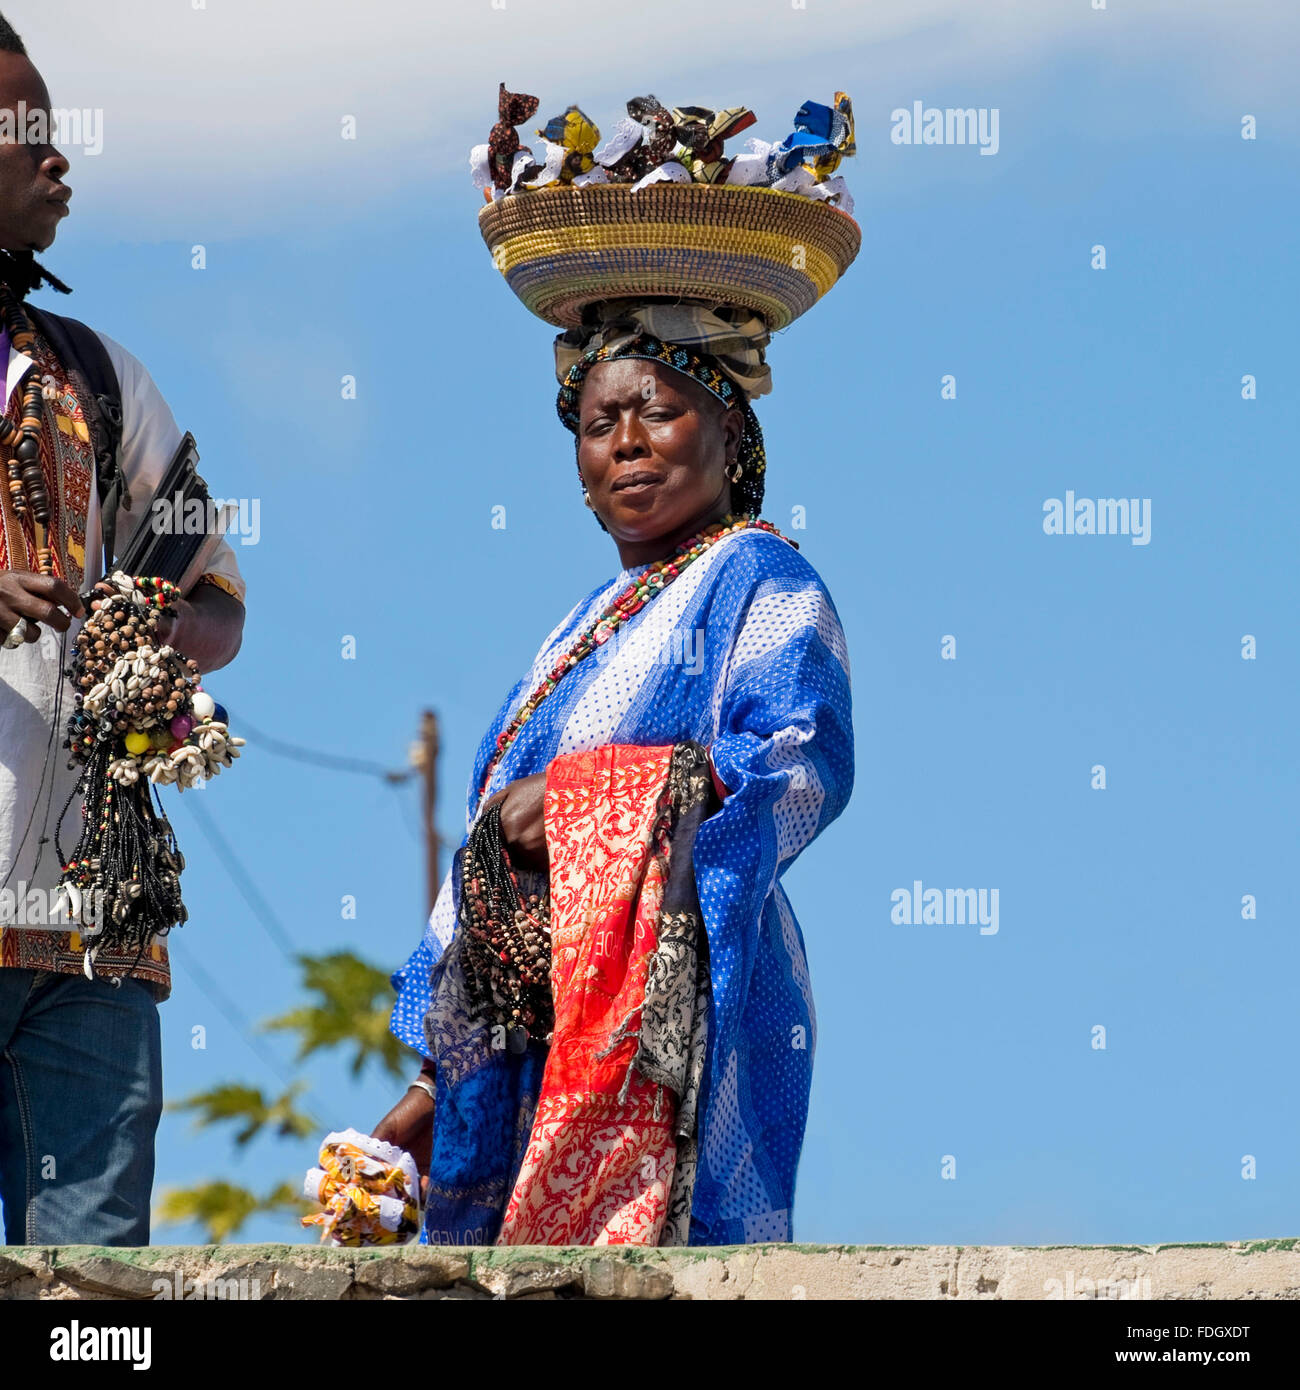 Square ritratto di un locale del Capo Verde donna che vende souvenir da un cestello equilibrato sul suo capo a Capo Verde. Foto Stock